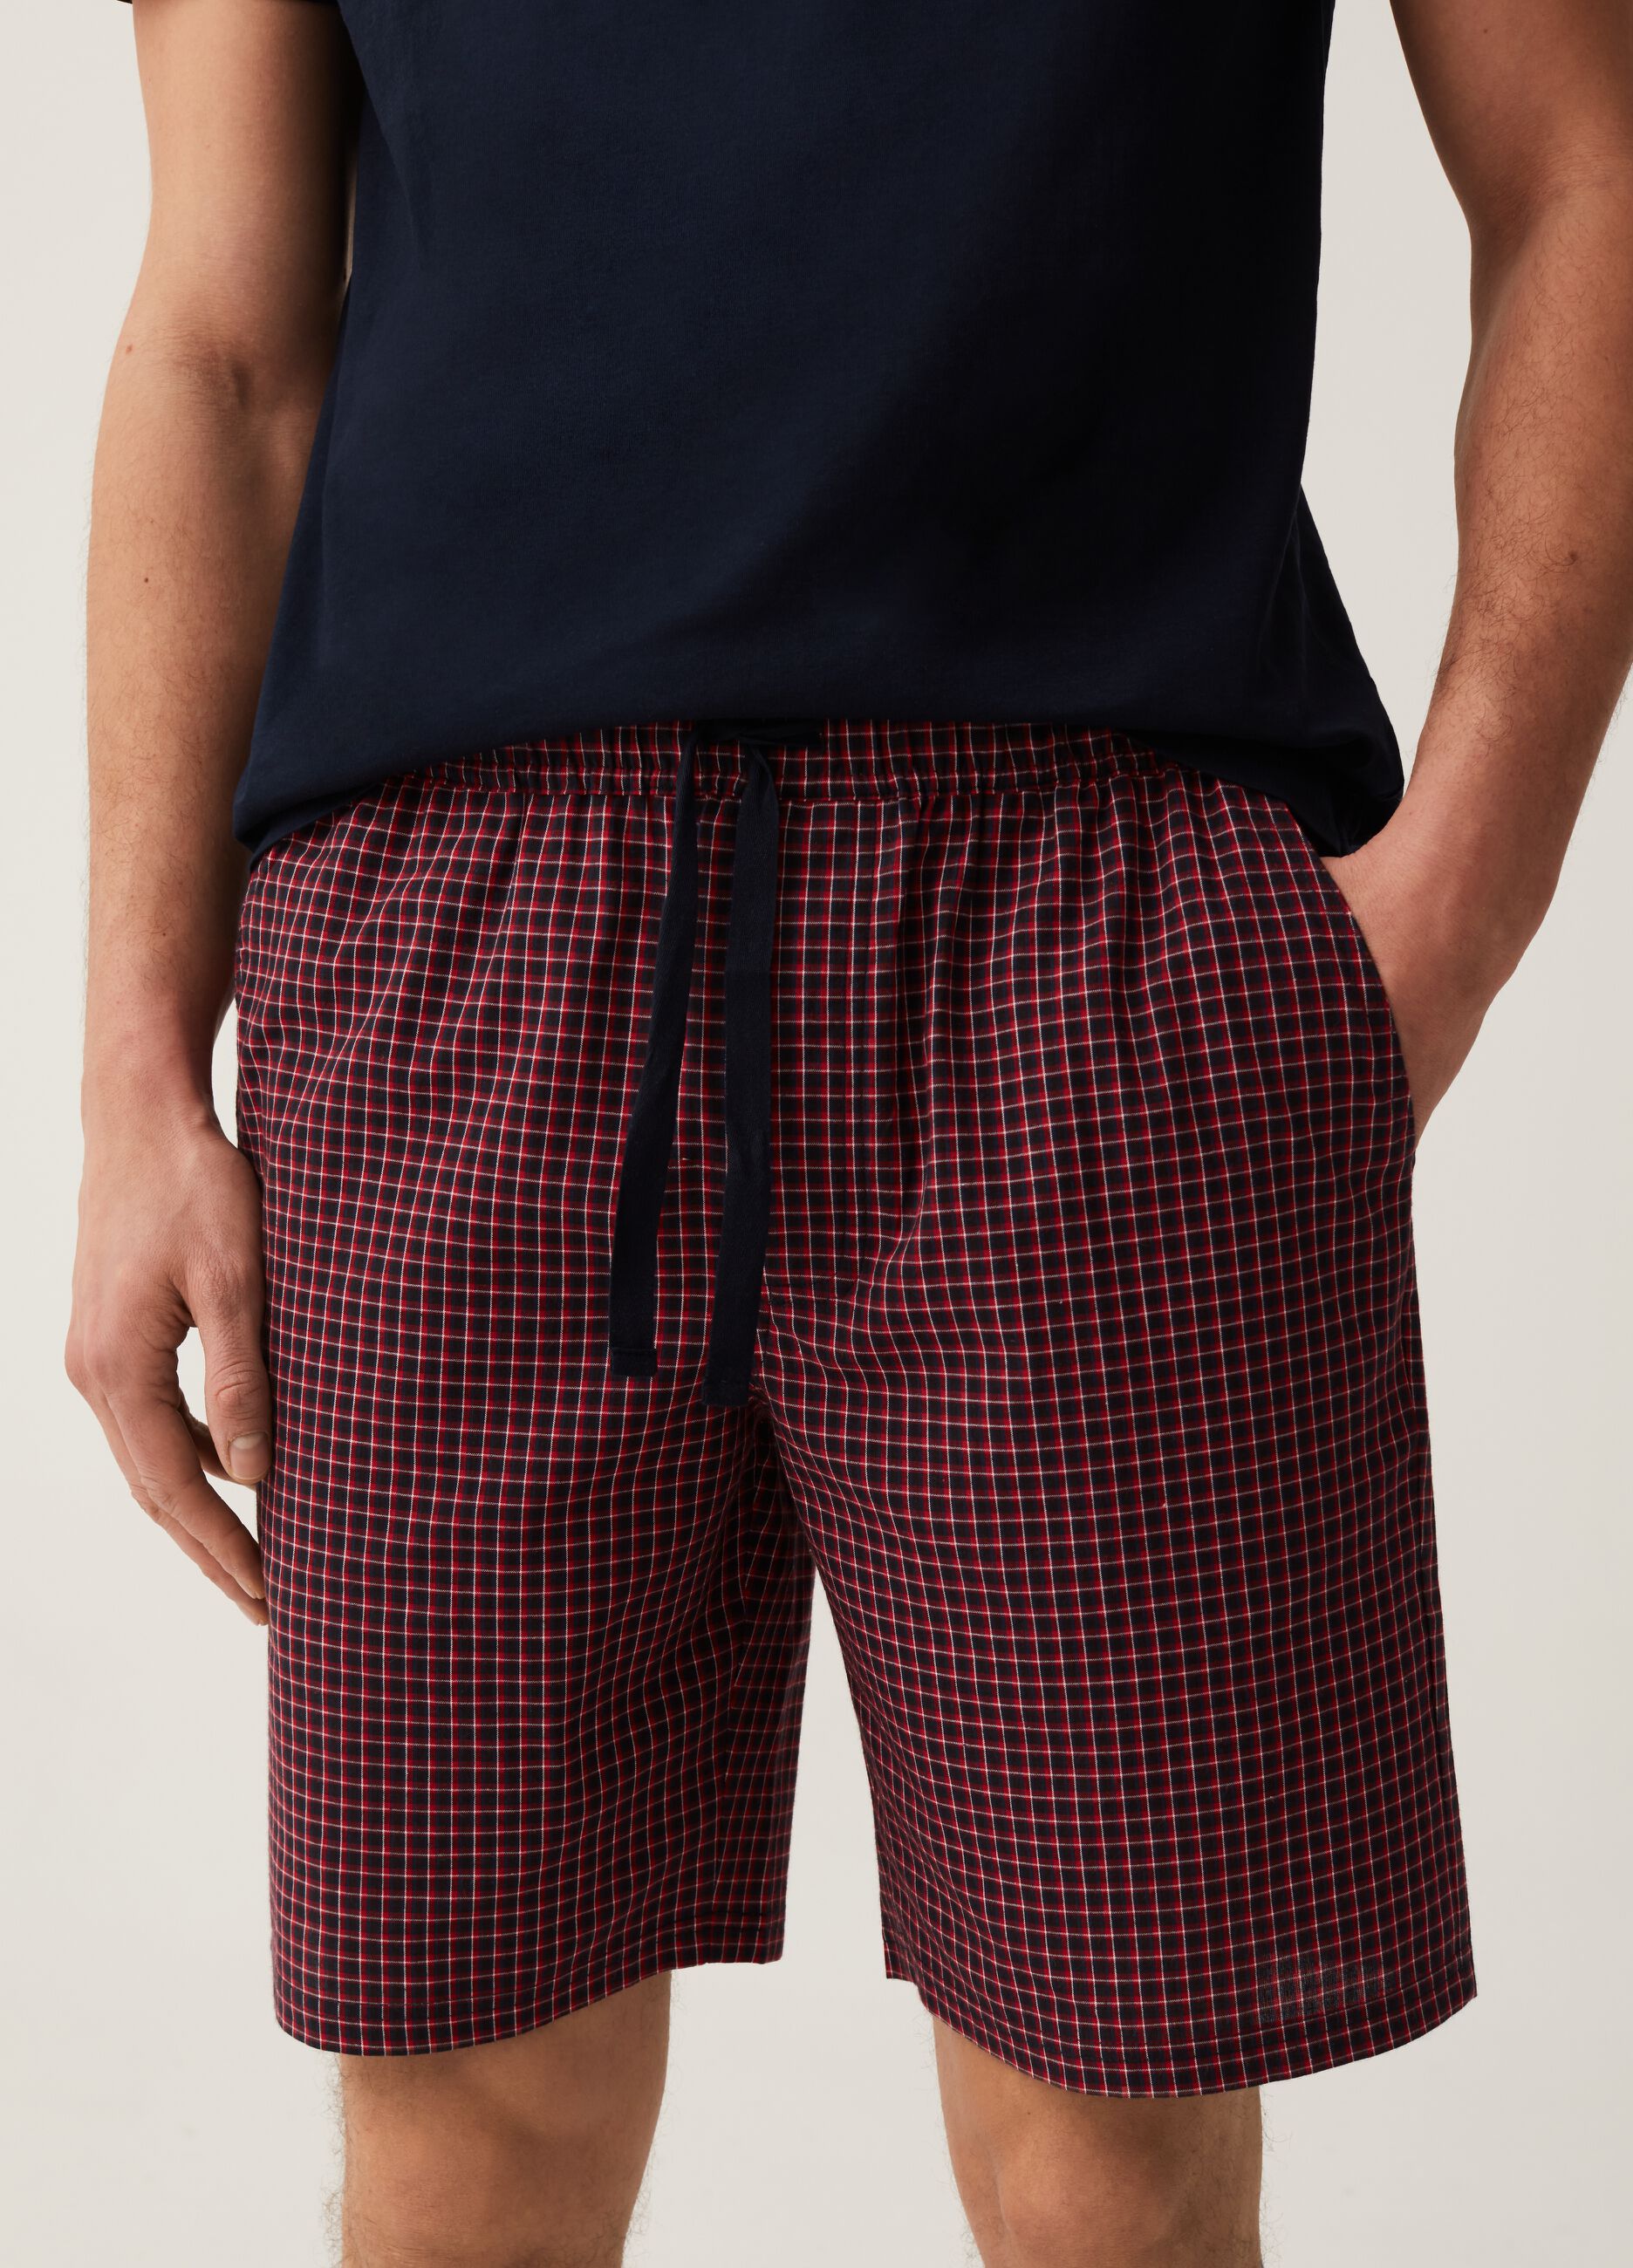 Pijama corto de algodón